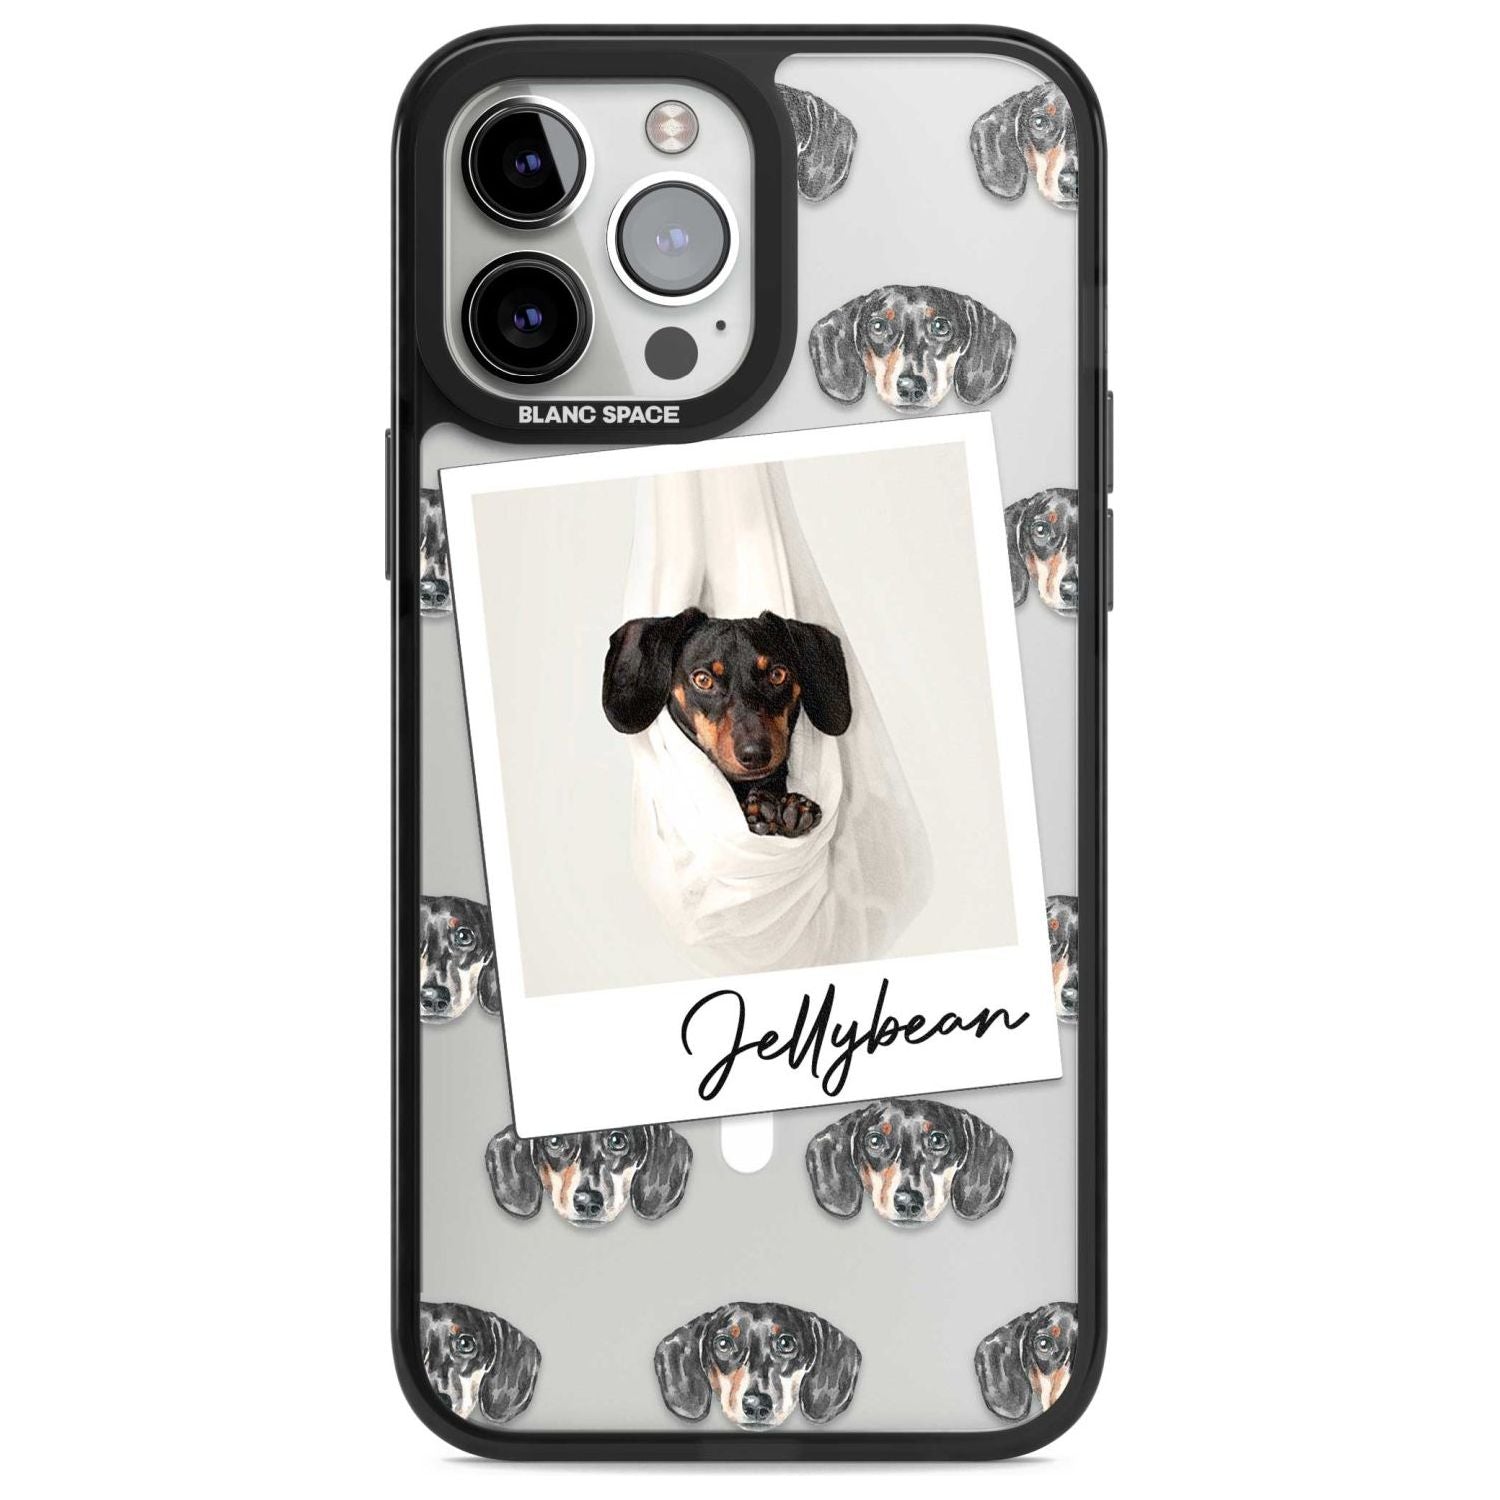 Personalised Dachshund, Black- Dog Photo Custom Phone Case iPhone 13 Pro Max / Magsafe Black Impact Case Blanc Space